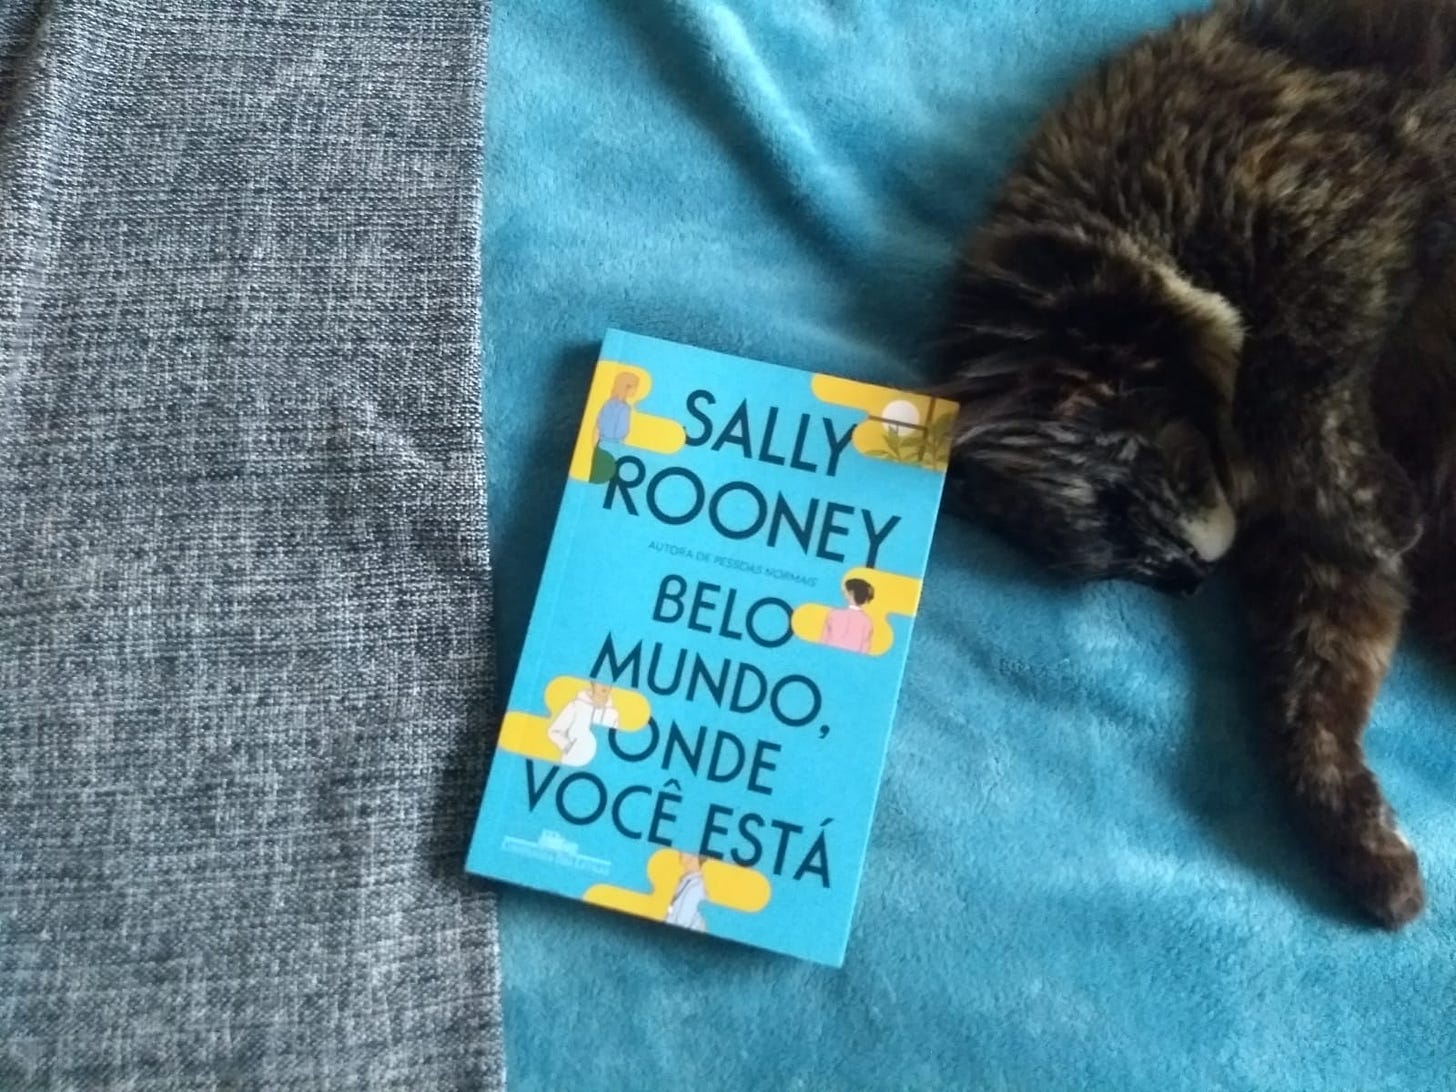 Foto vista de cima. Ao fundo, uma coberta cinza e uma azul. No centro, o livro "Belo mundo, onde você está", da Sally Rooney. A direita, uma gata de pêlo marrom deitada.